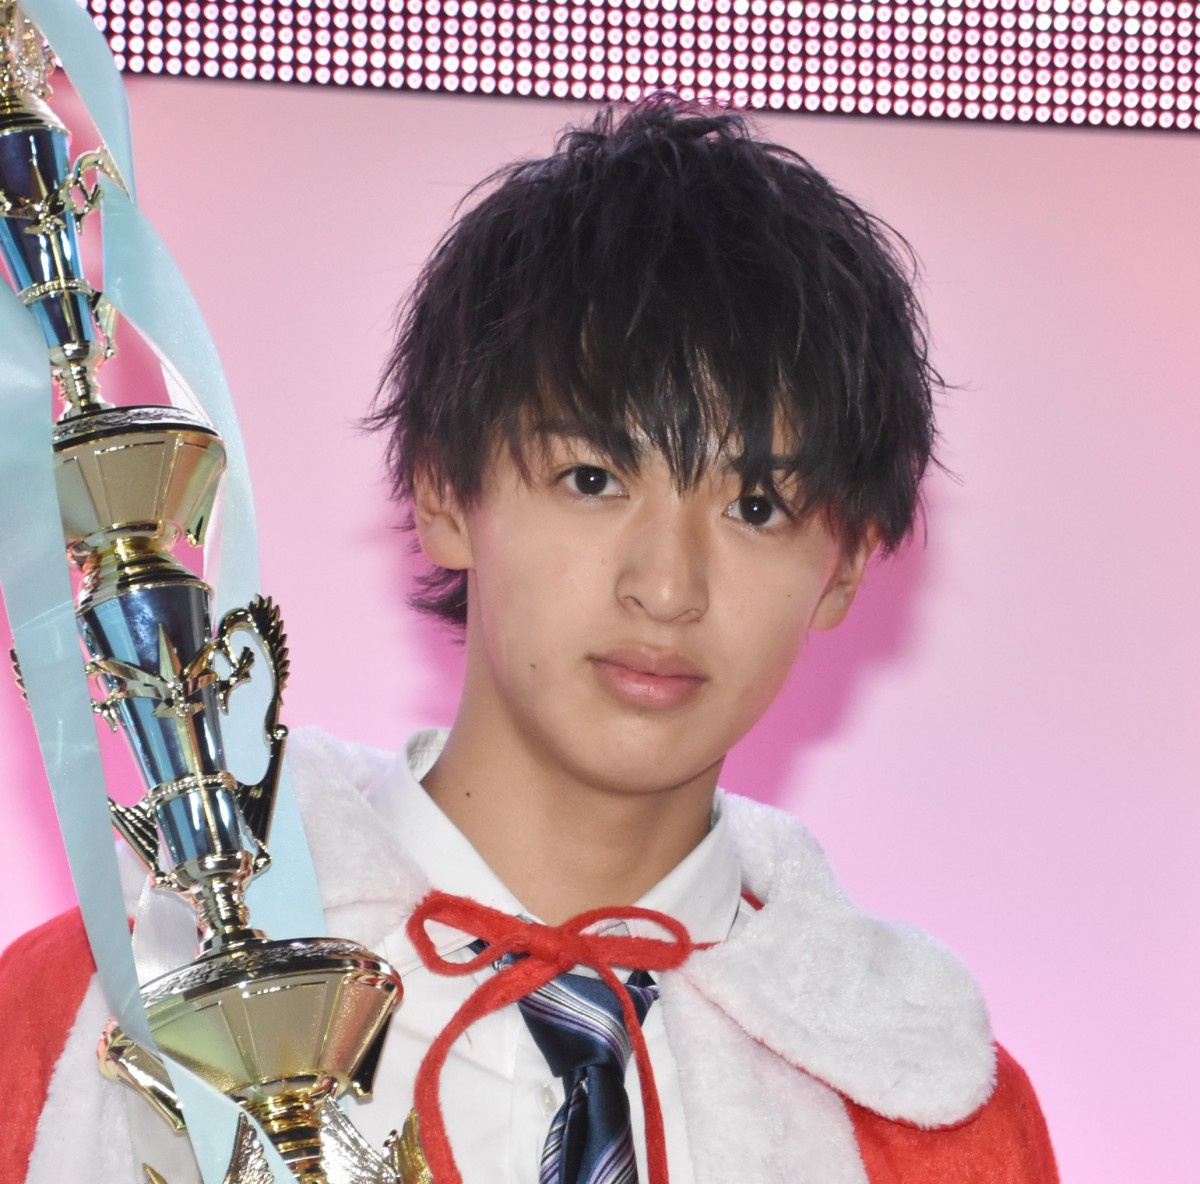 日本一のイケメン高校生 滋賀の高校1年生がグランプリ 西岡将汰さん 一番をとれたことがうれしい Oricon News